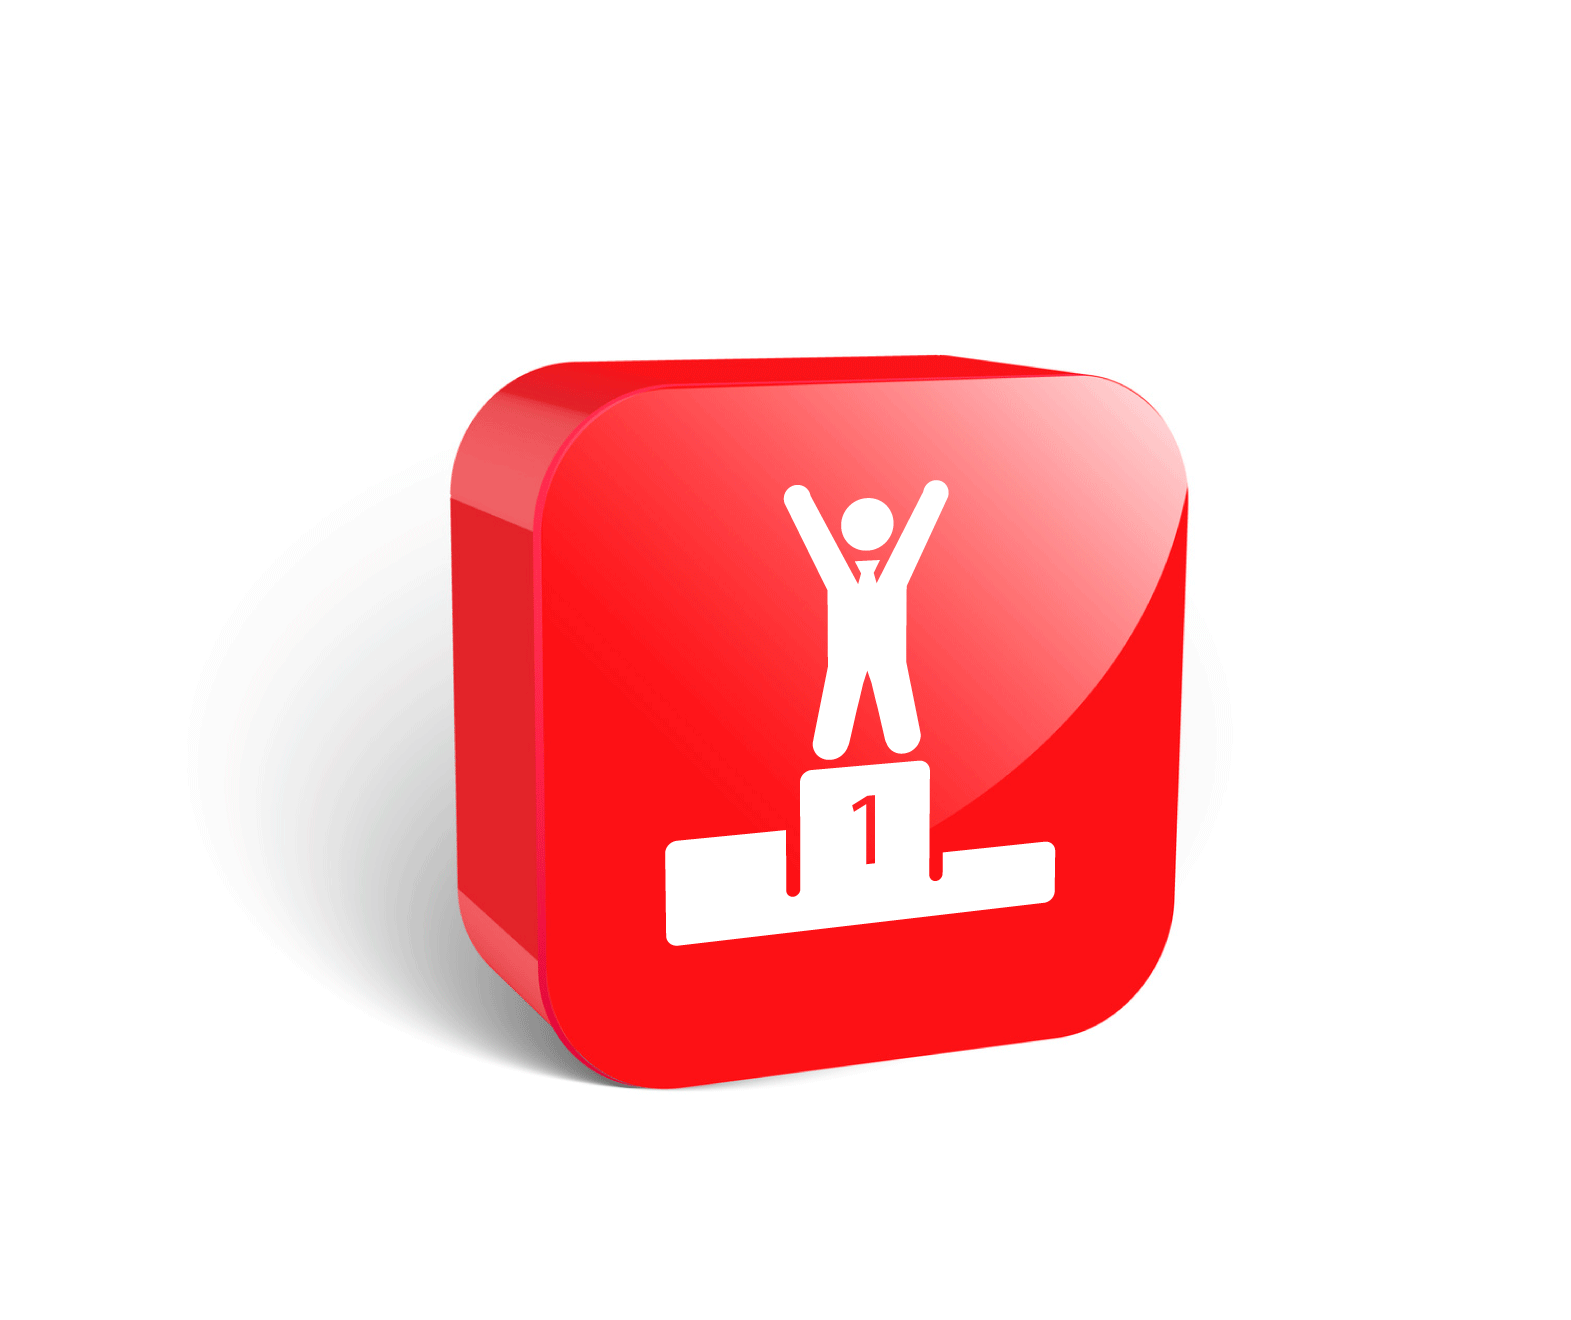 duża czerwona ikona 3D, podium, nagrody jubileuszowe